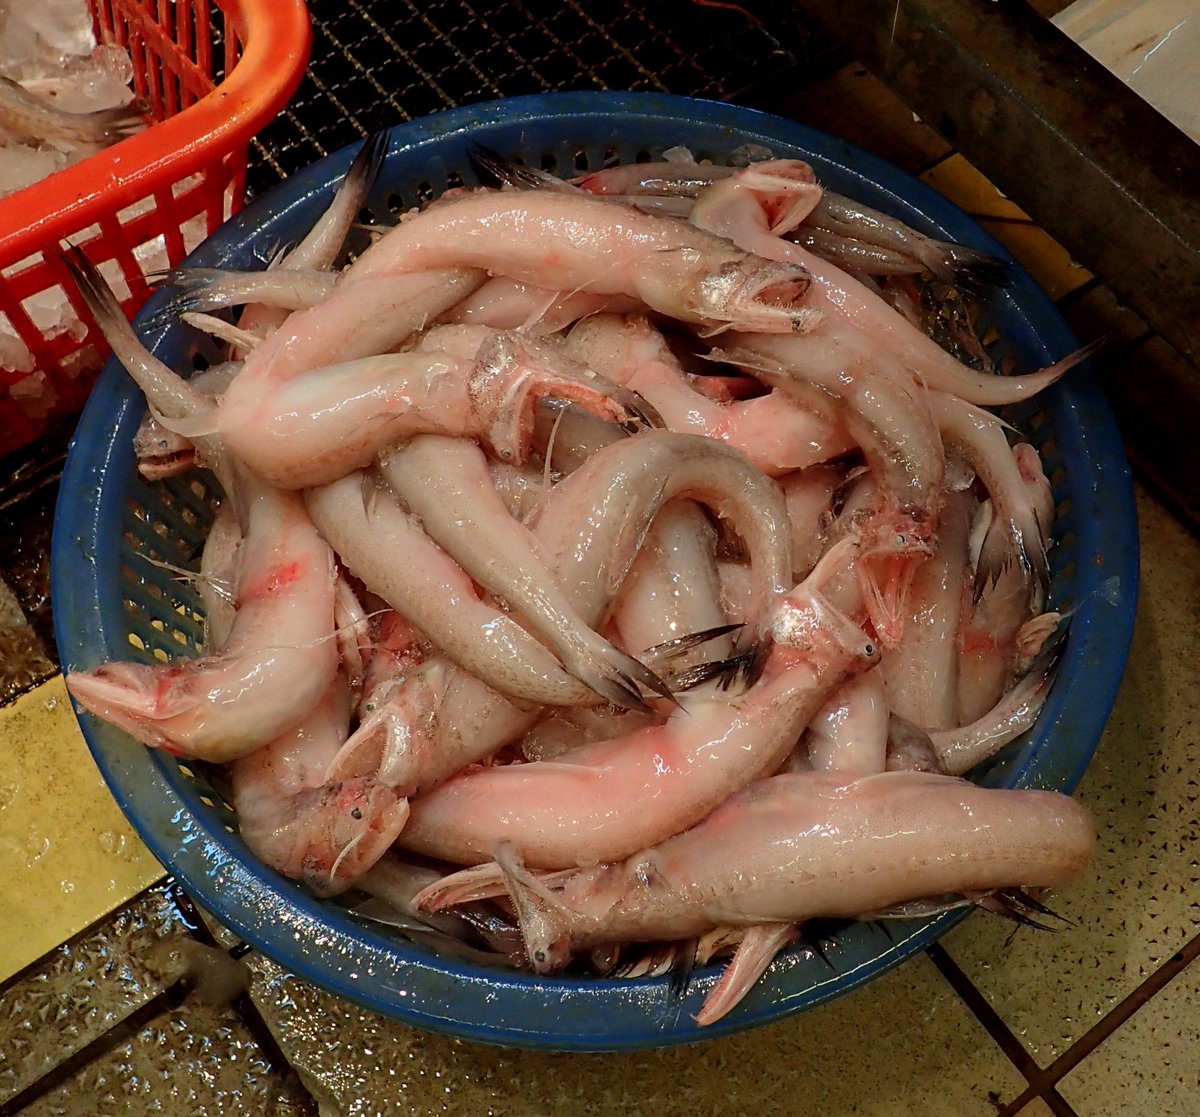 平坂寛 香港の市場で見かけたテナガミズテング 川魚と日本でも見慣れた沿岸性の魚が多い中で異彩を放っていました